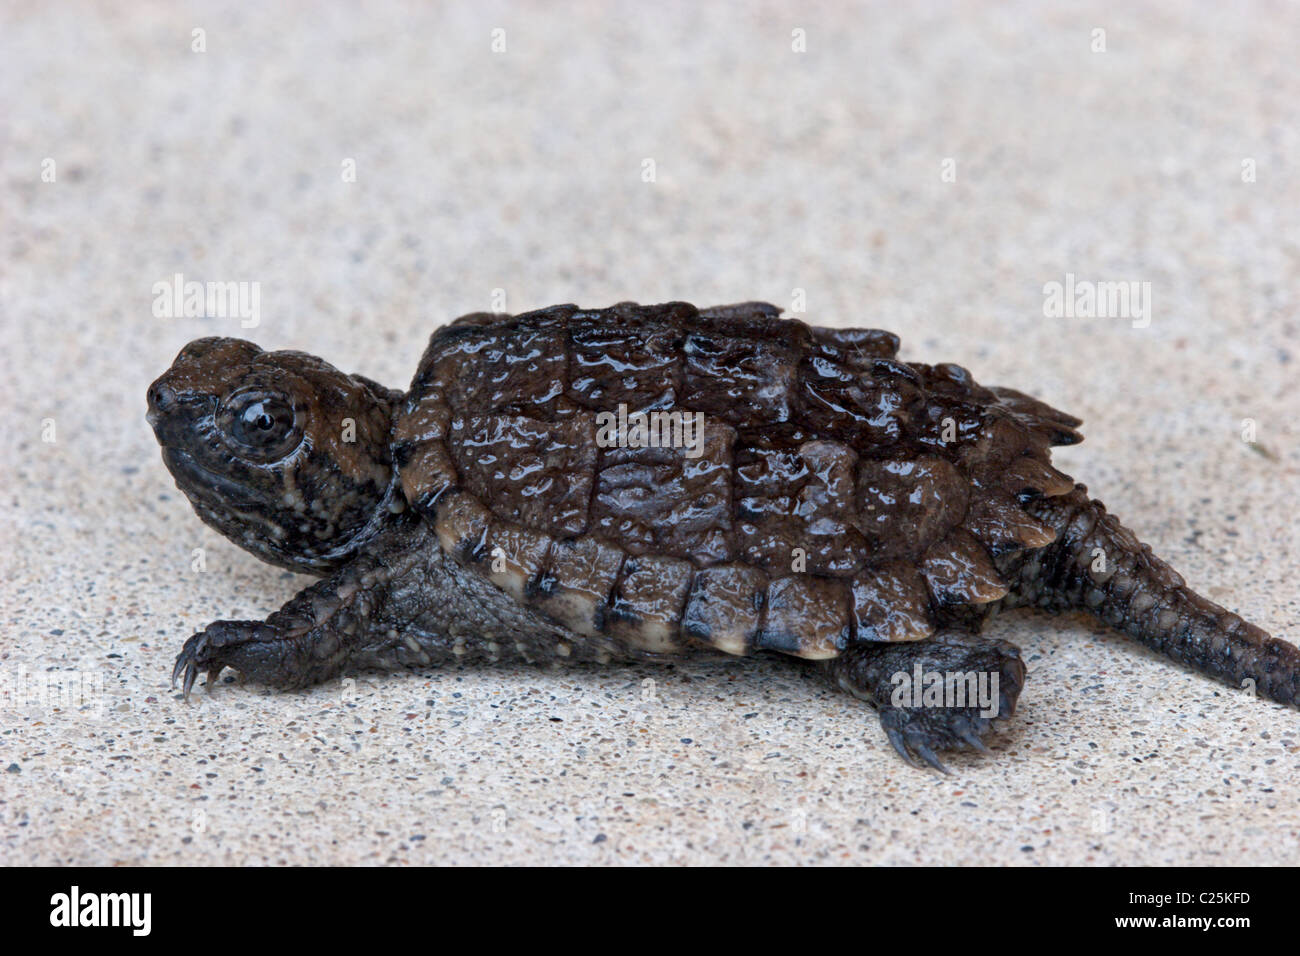 La chélydre serpentine bébé reptile tortue animal shell Banque D'Images